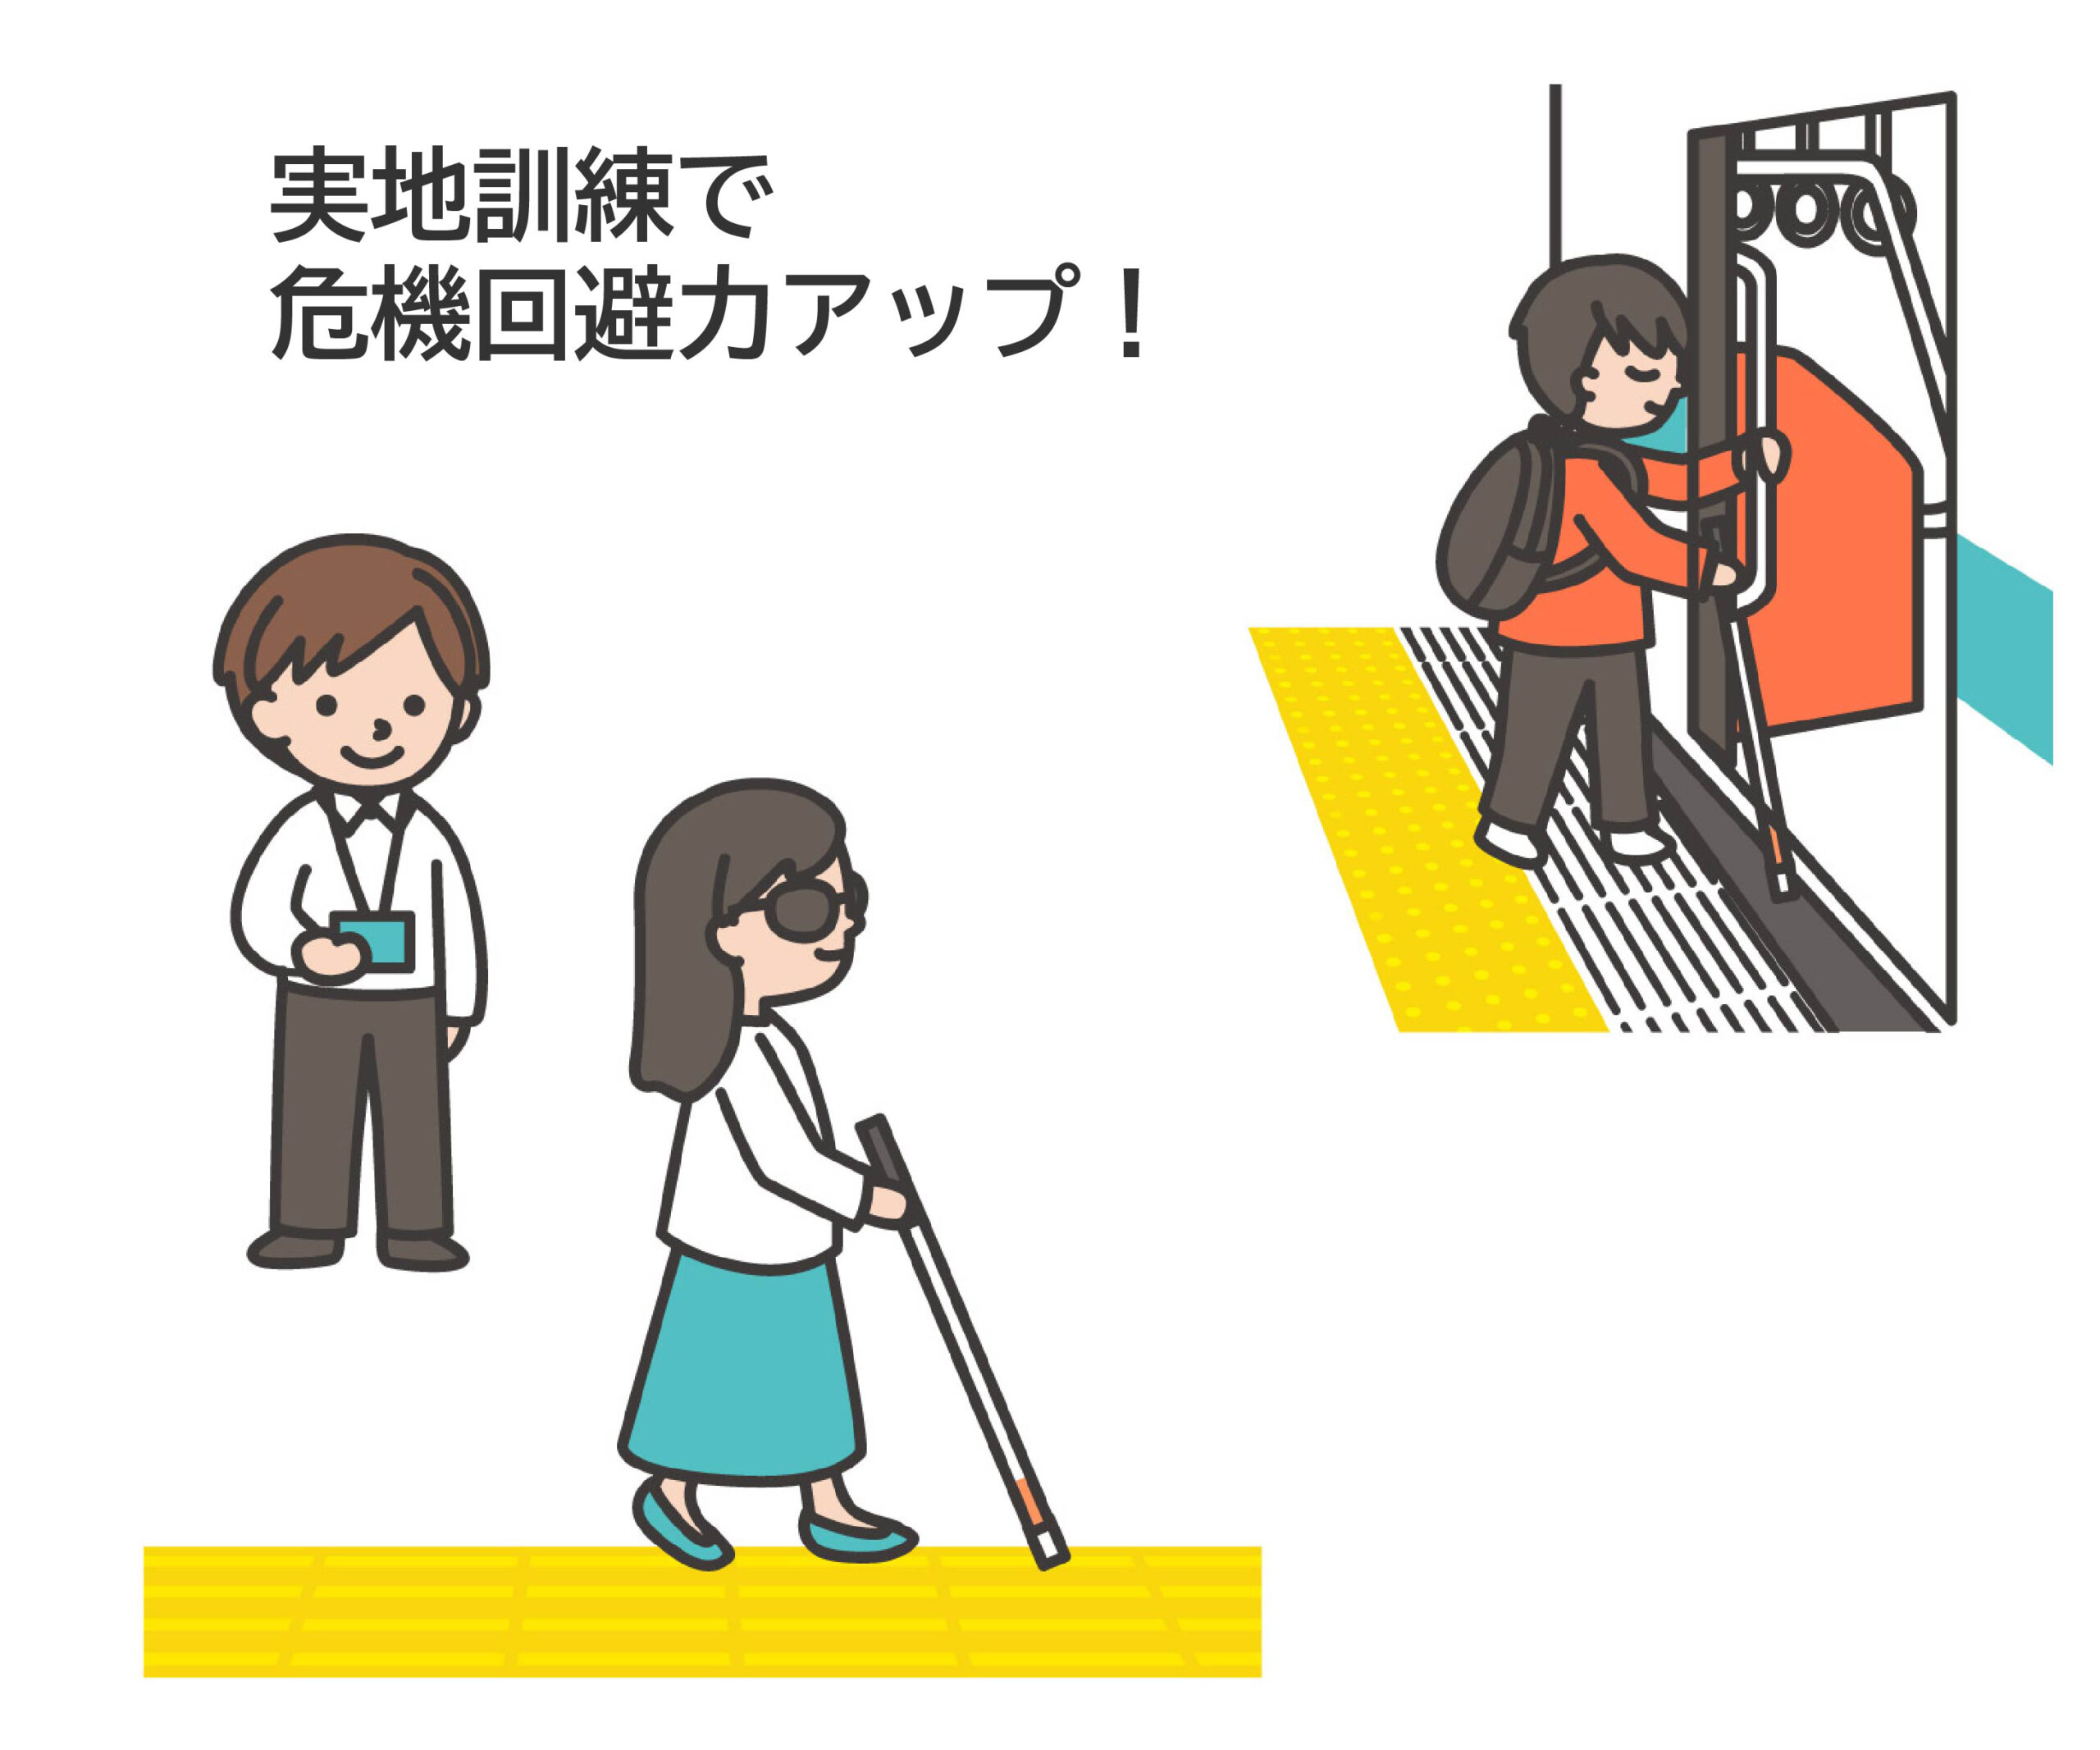 2パターンのイラスト。訓練士が見守る中、白杖で点字ブロックの上を歩く女性と白杖で確認しながら電車に乗り込む男性。